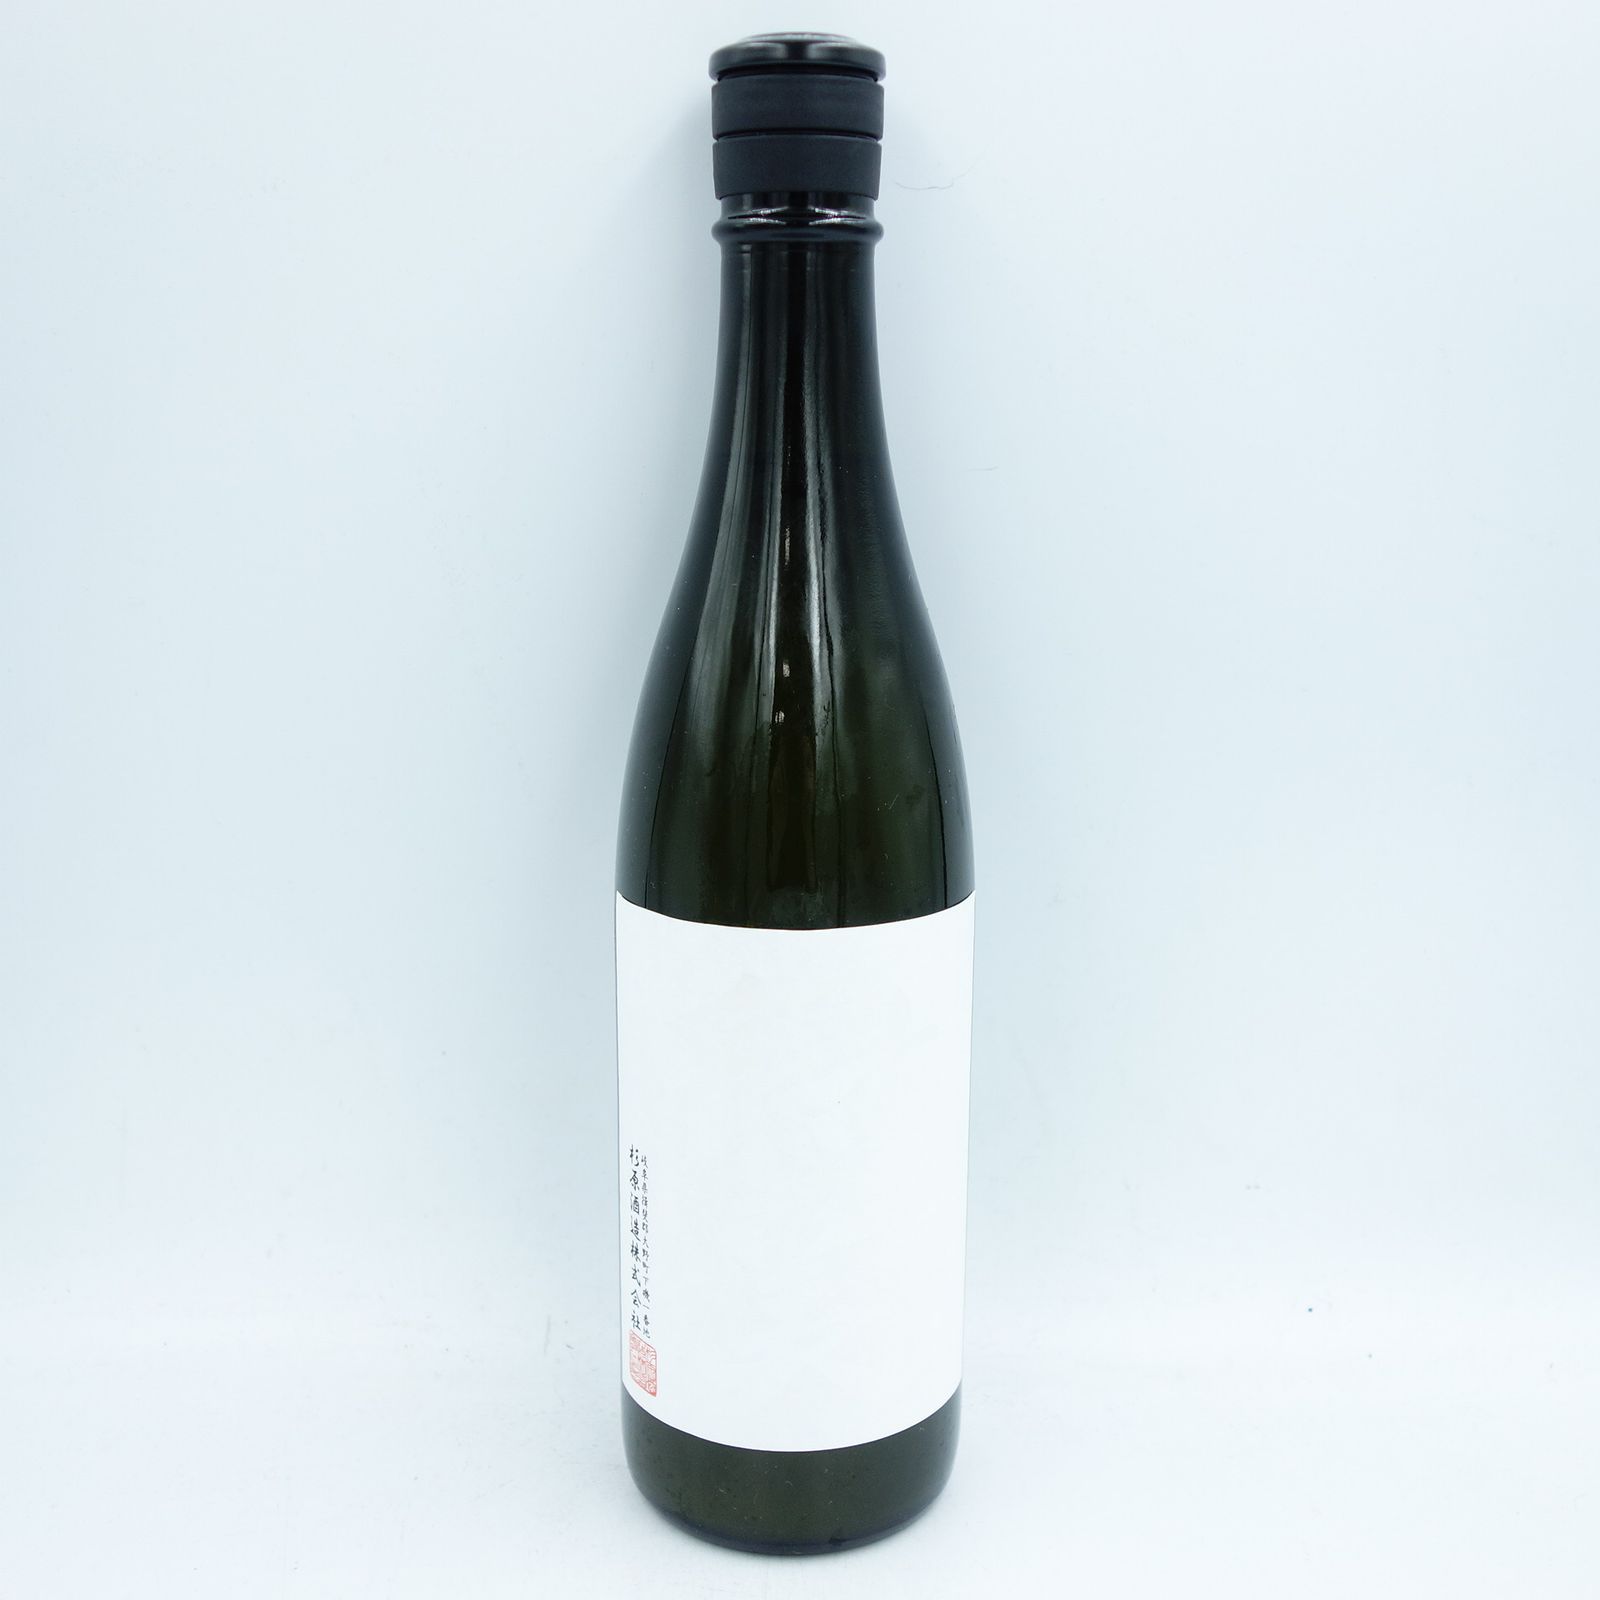 射美 ホワイト white 720ml - 日本酒